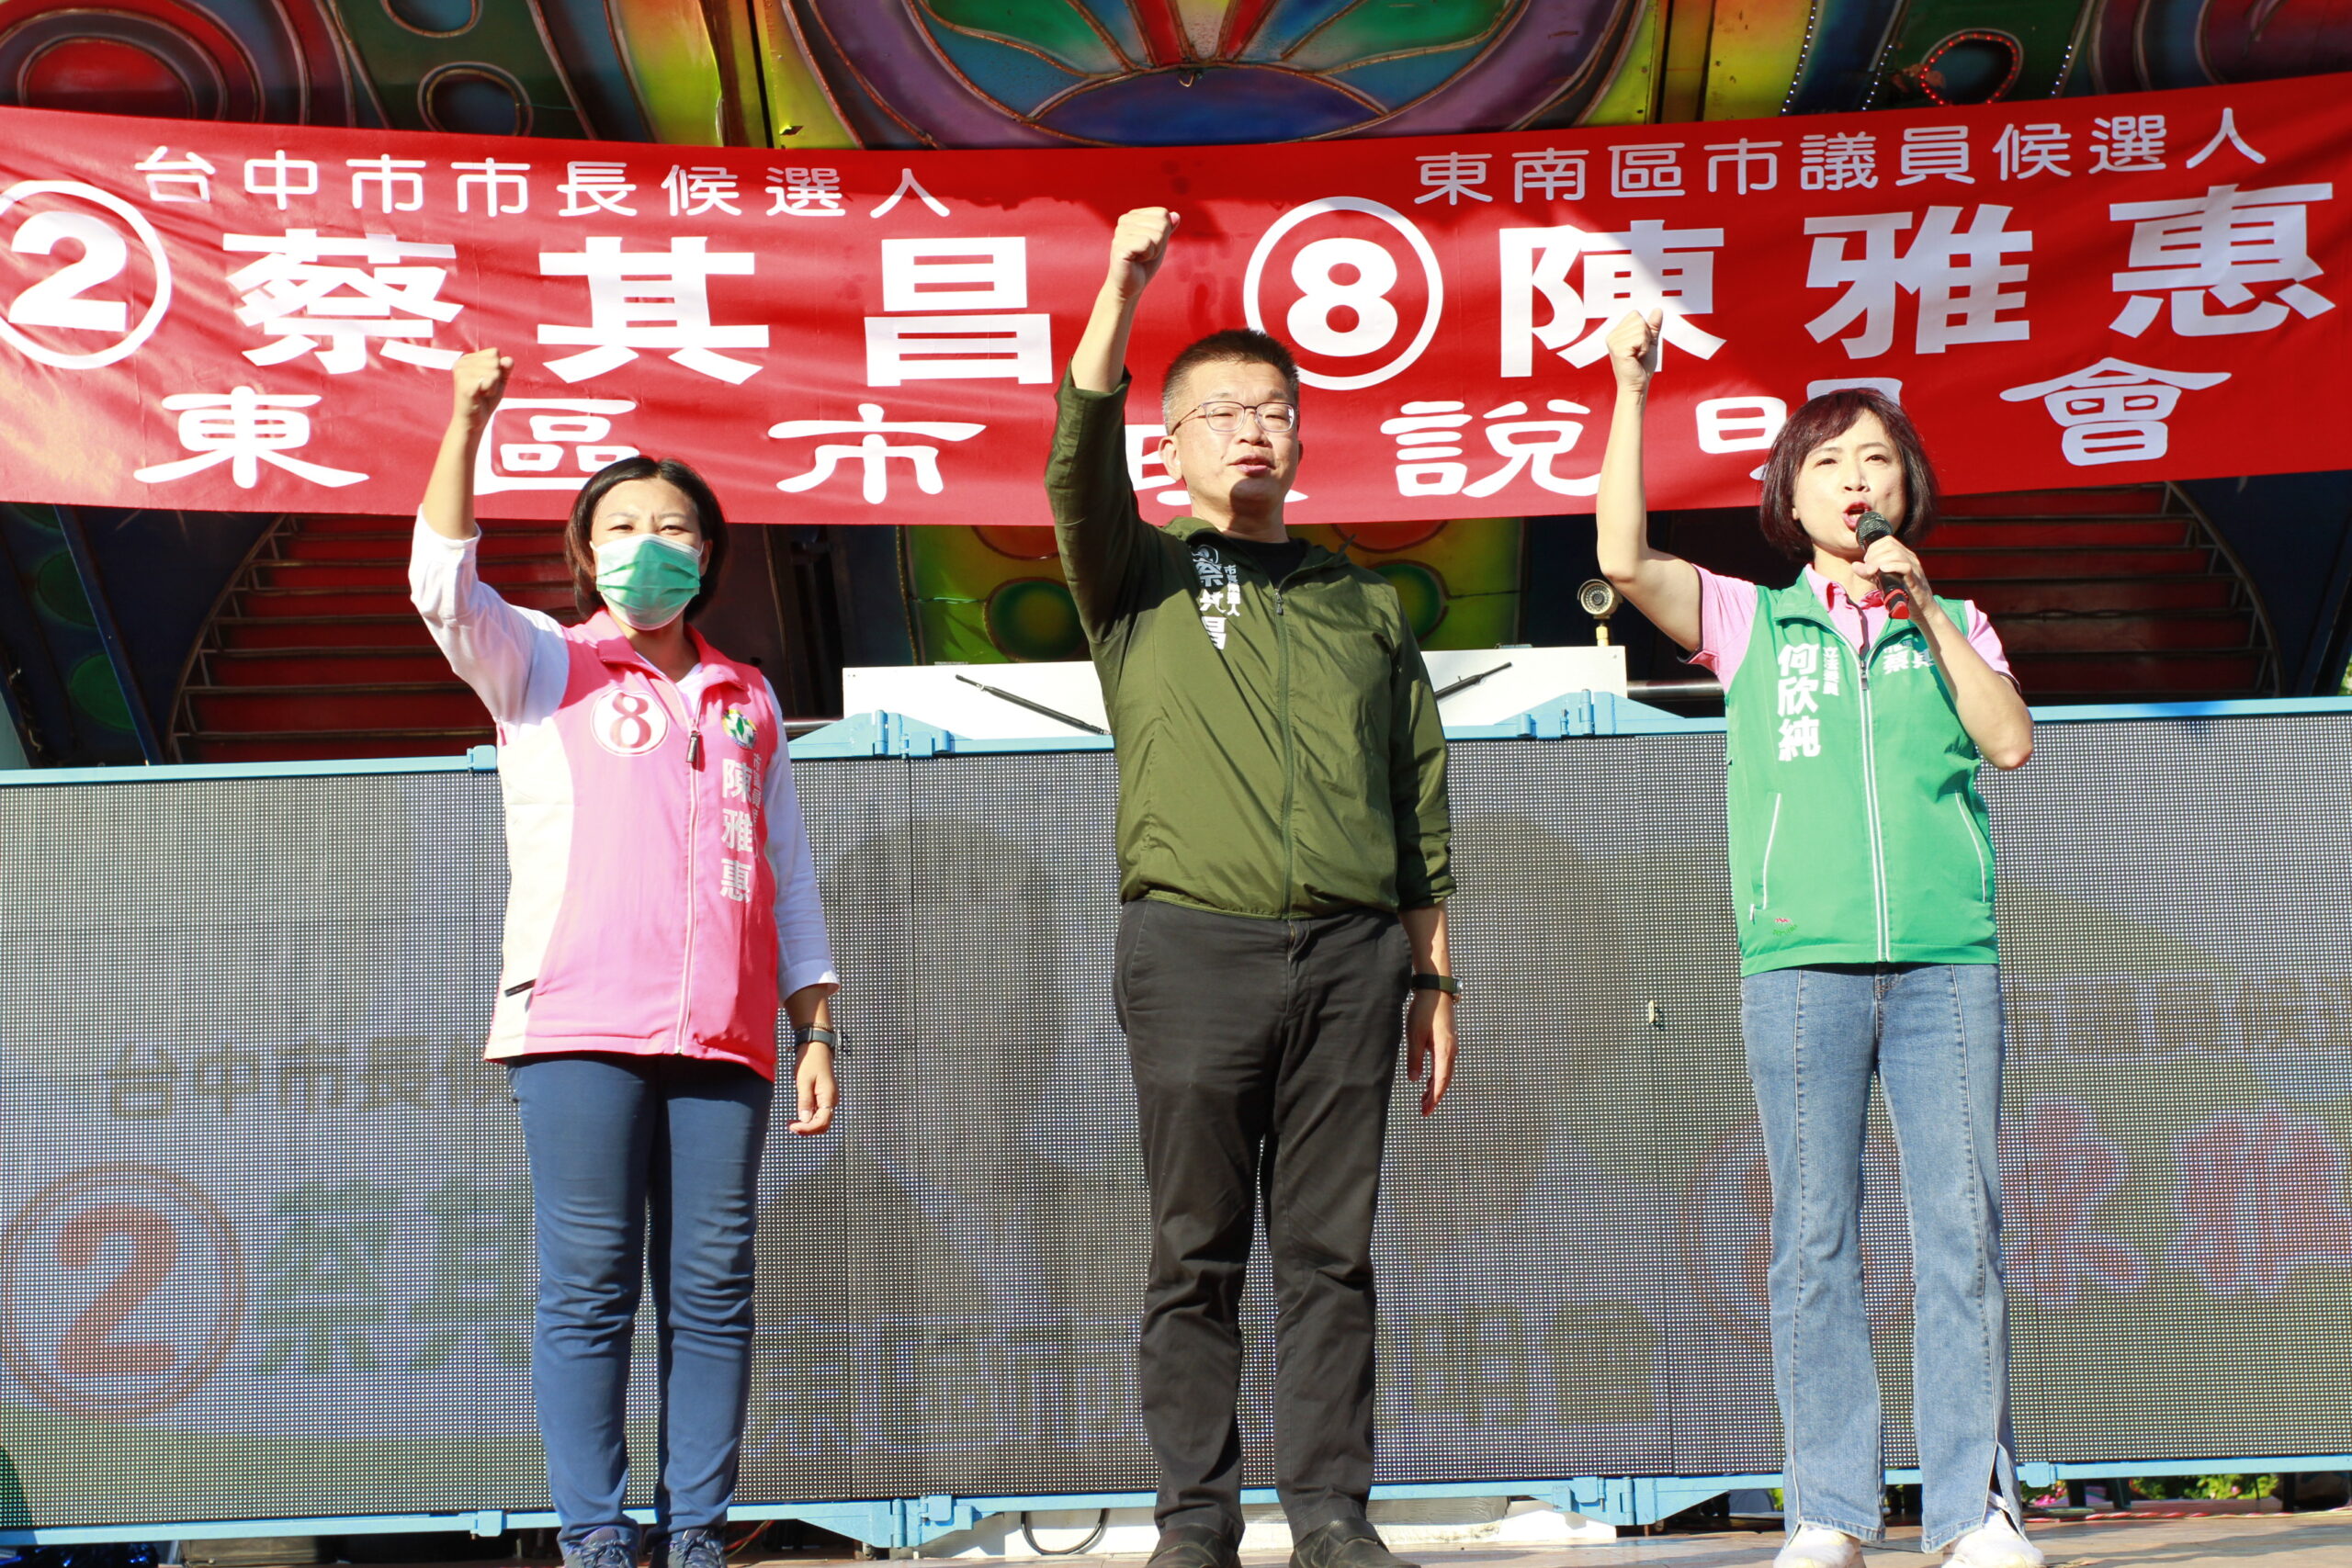 東南區市議員候選人陳雅惠選情告急 哽咽籲支持者集中選票別造成遺憾